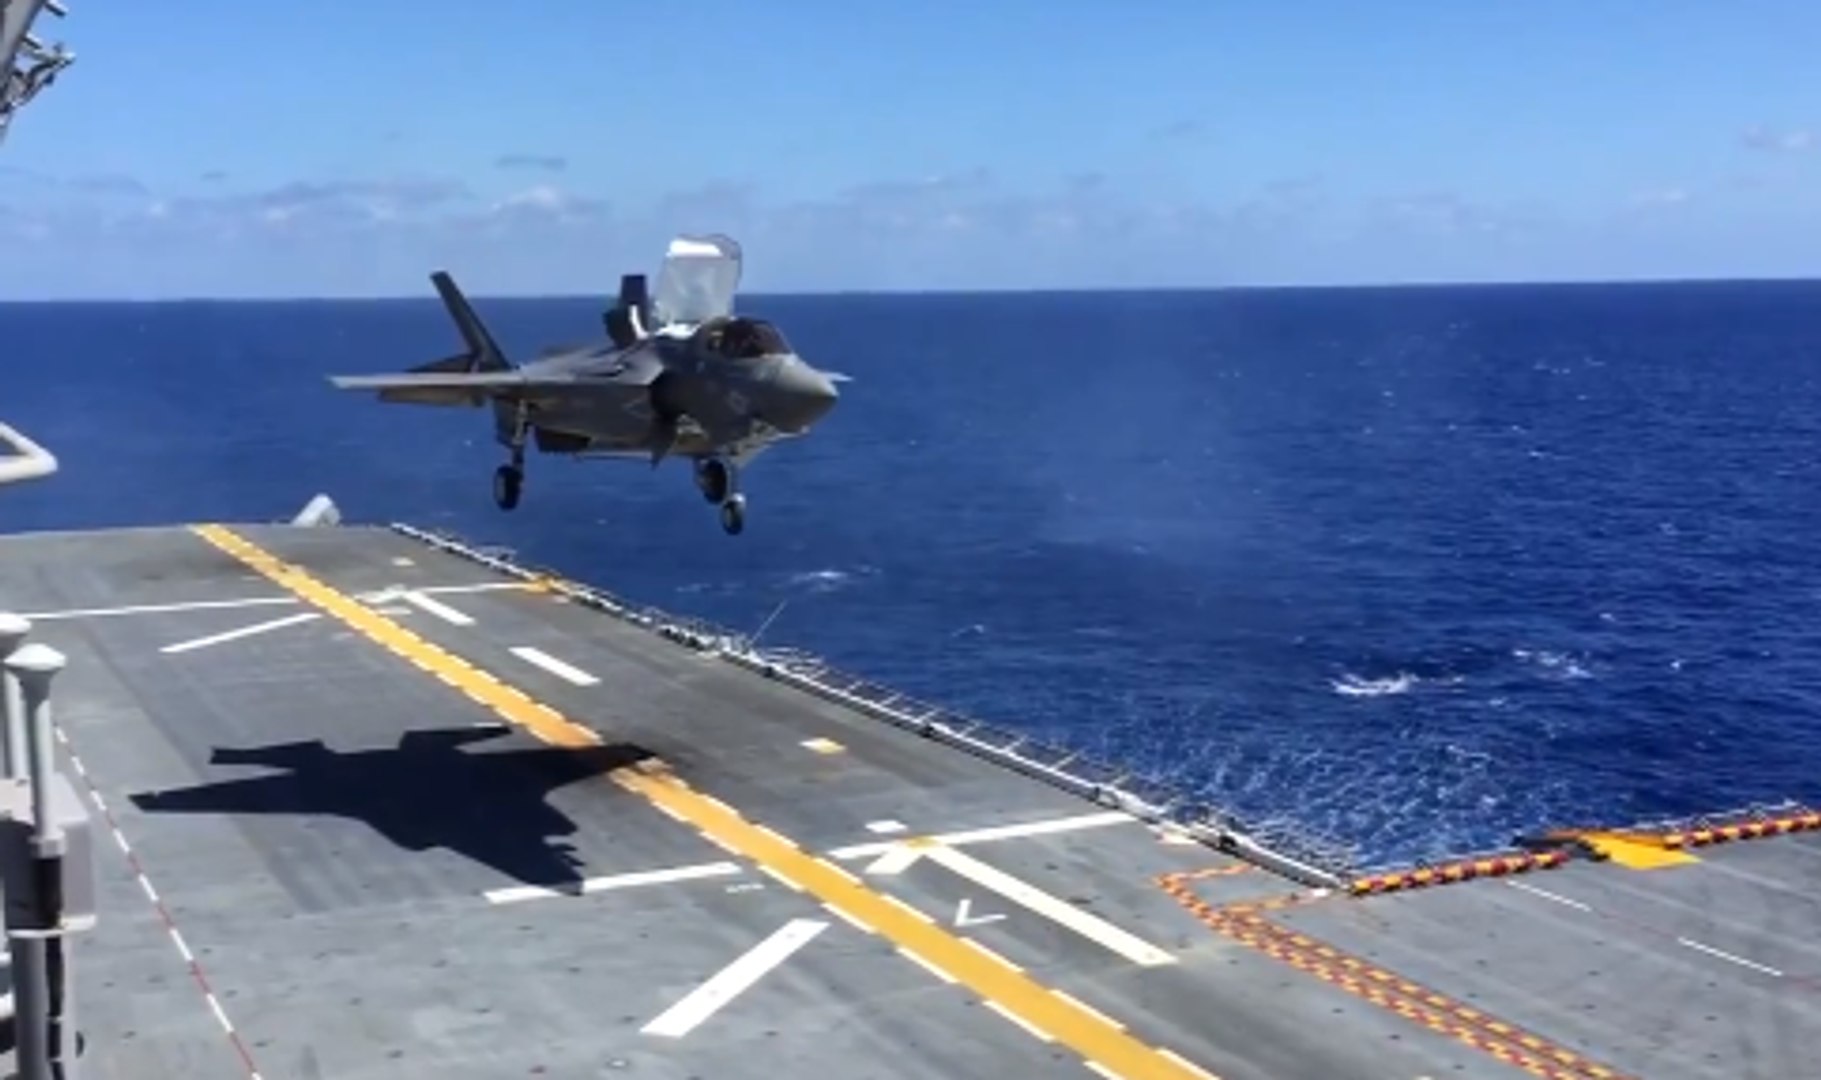 Un avion de chasse américain atterrit à la verticale - Vidéo Dailymotion